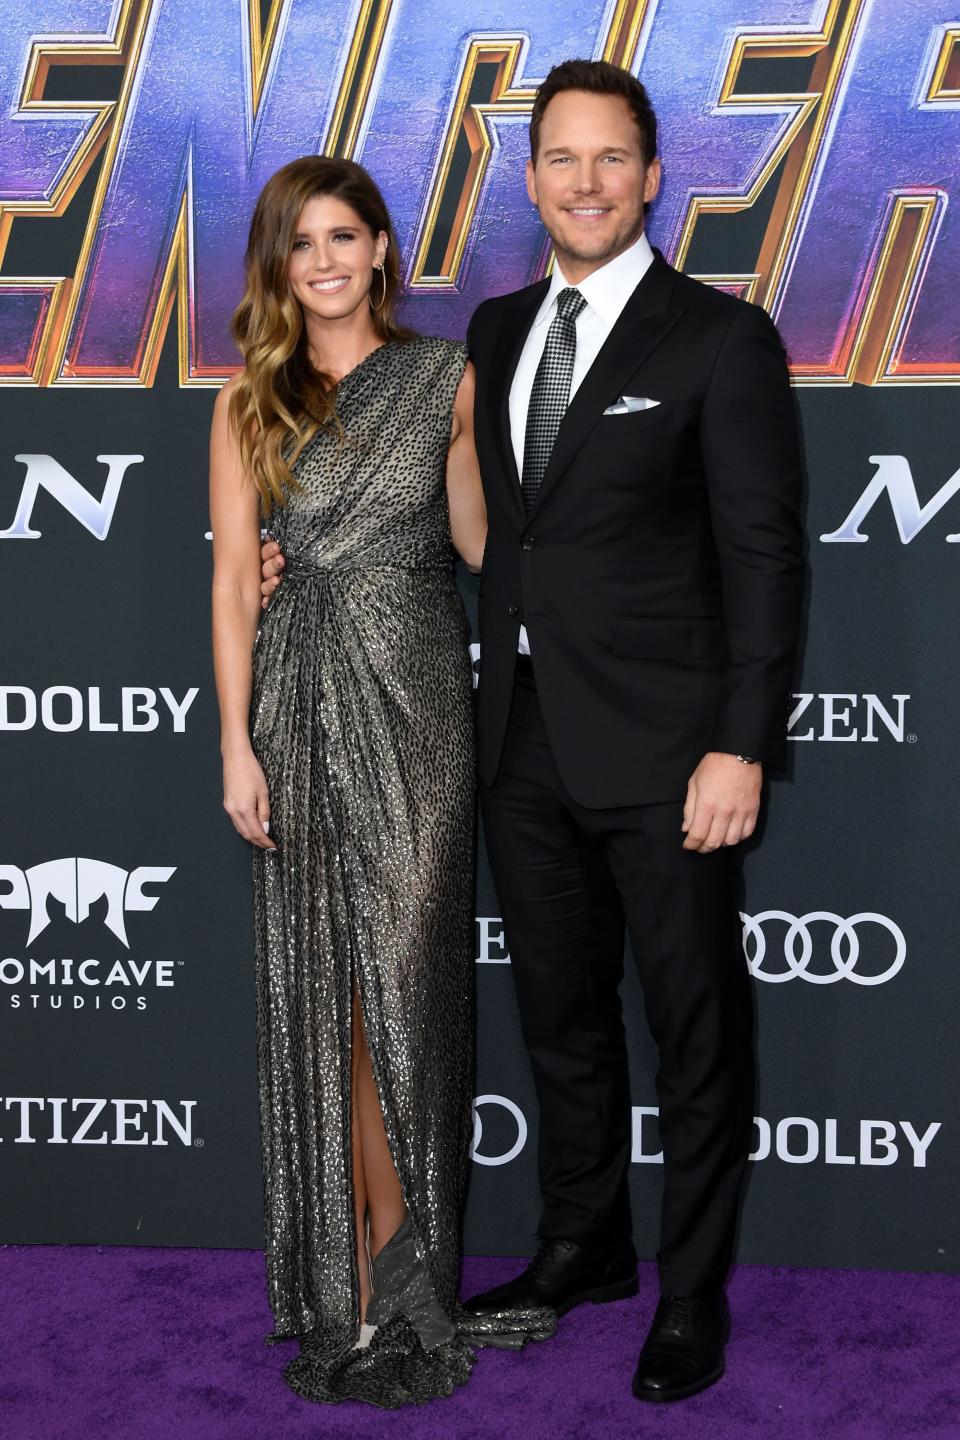 Chris Pratt Is Almost Always Standing In Front Of Wife Katherine Schwarzenegger